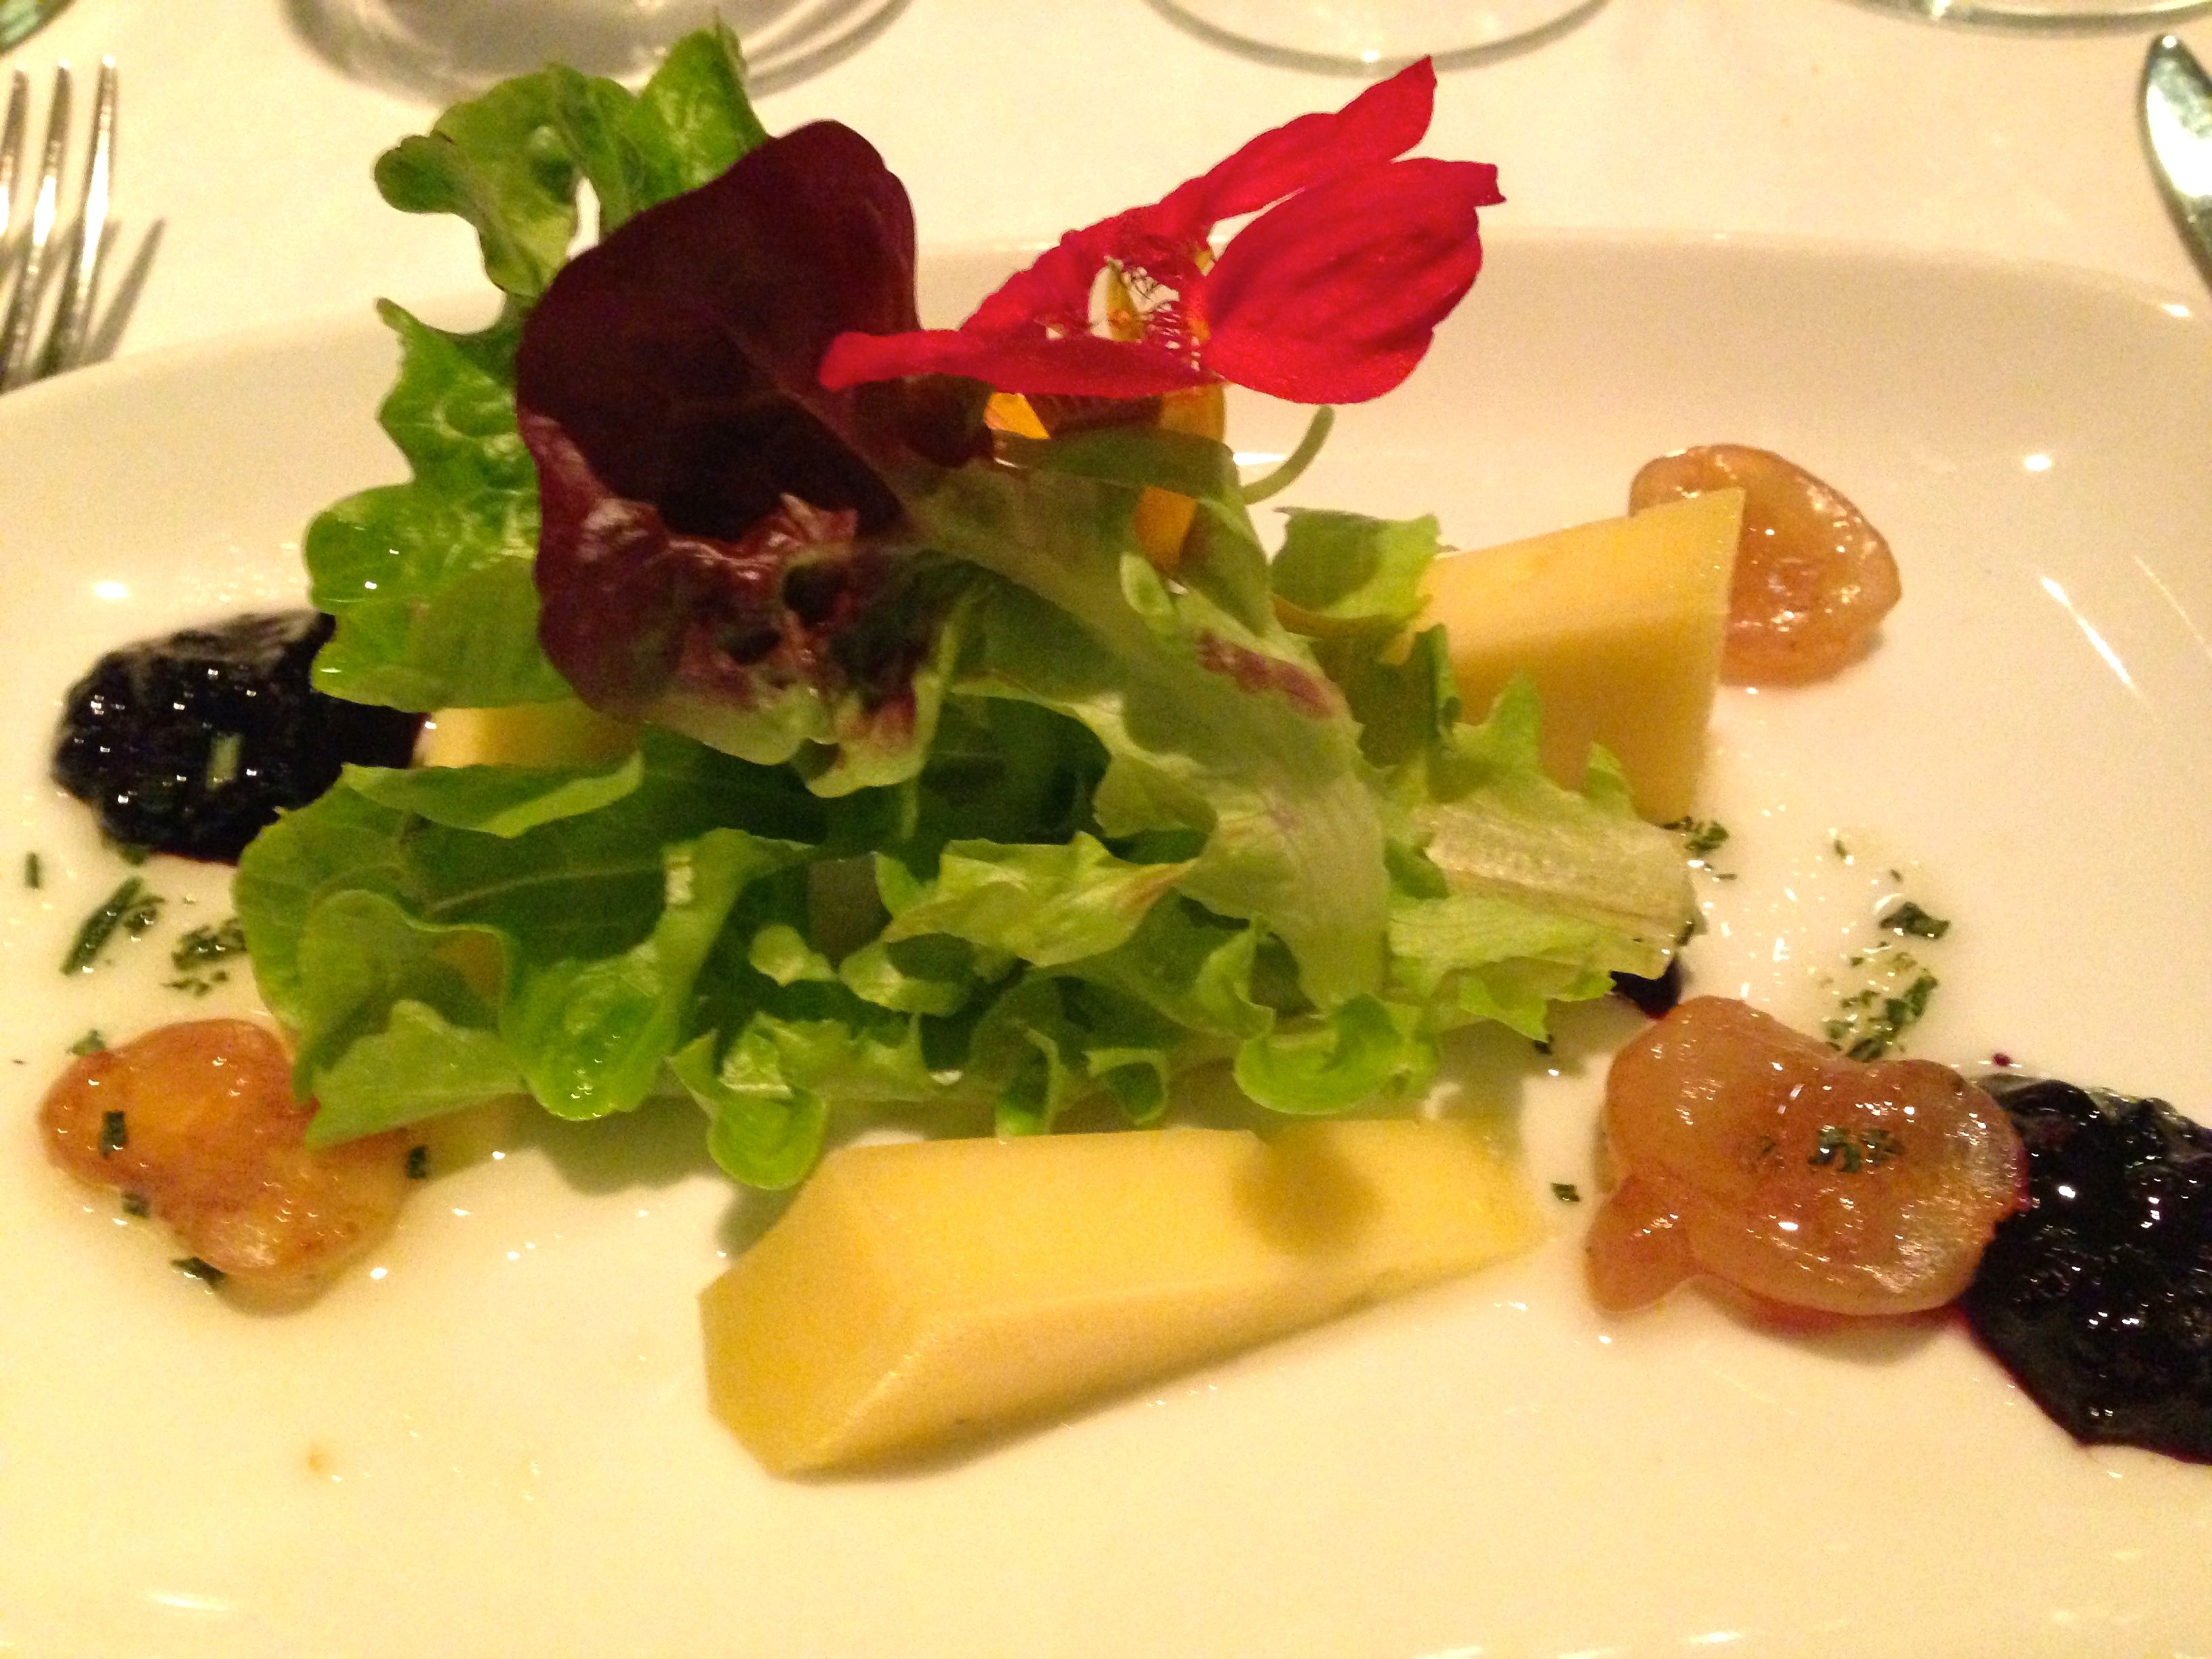 Hegyi sajt, tölgylevél saláta szőlővel keverve, mézes-rozmaringos dresszinggel és bodza lekvárral, árvácskával